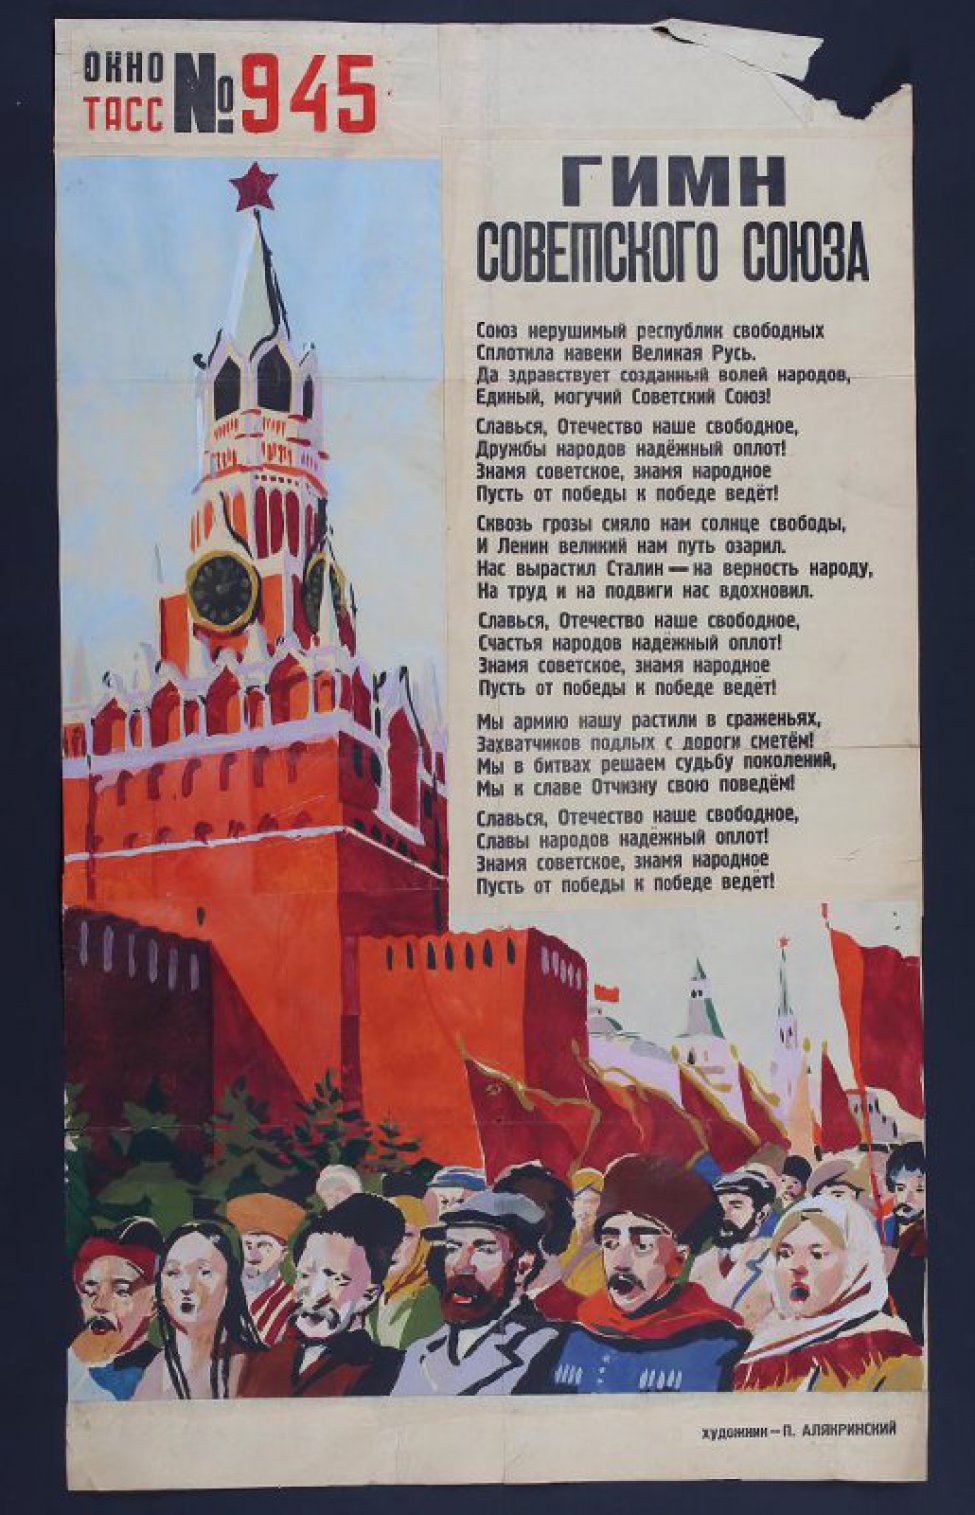 Изображено: по Красной площади у Спасской башни проходят представители различных национальностей Советского Союза, справа текст гимна Советского Союза.